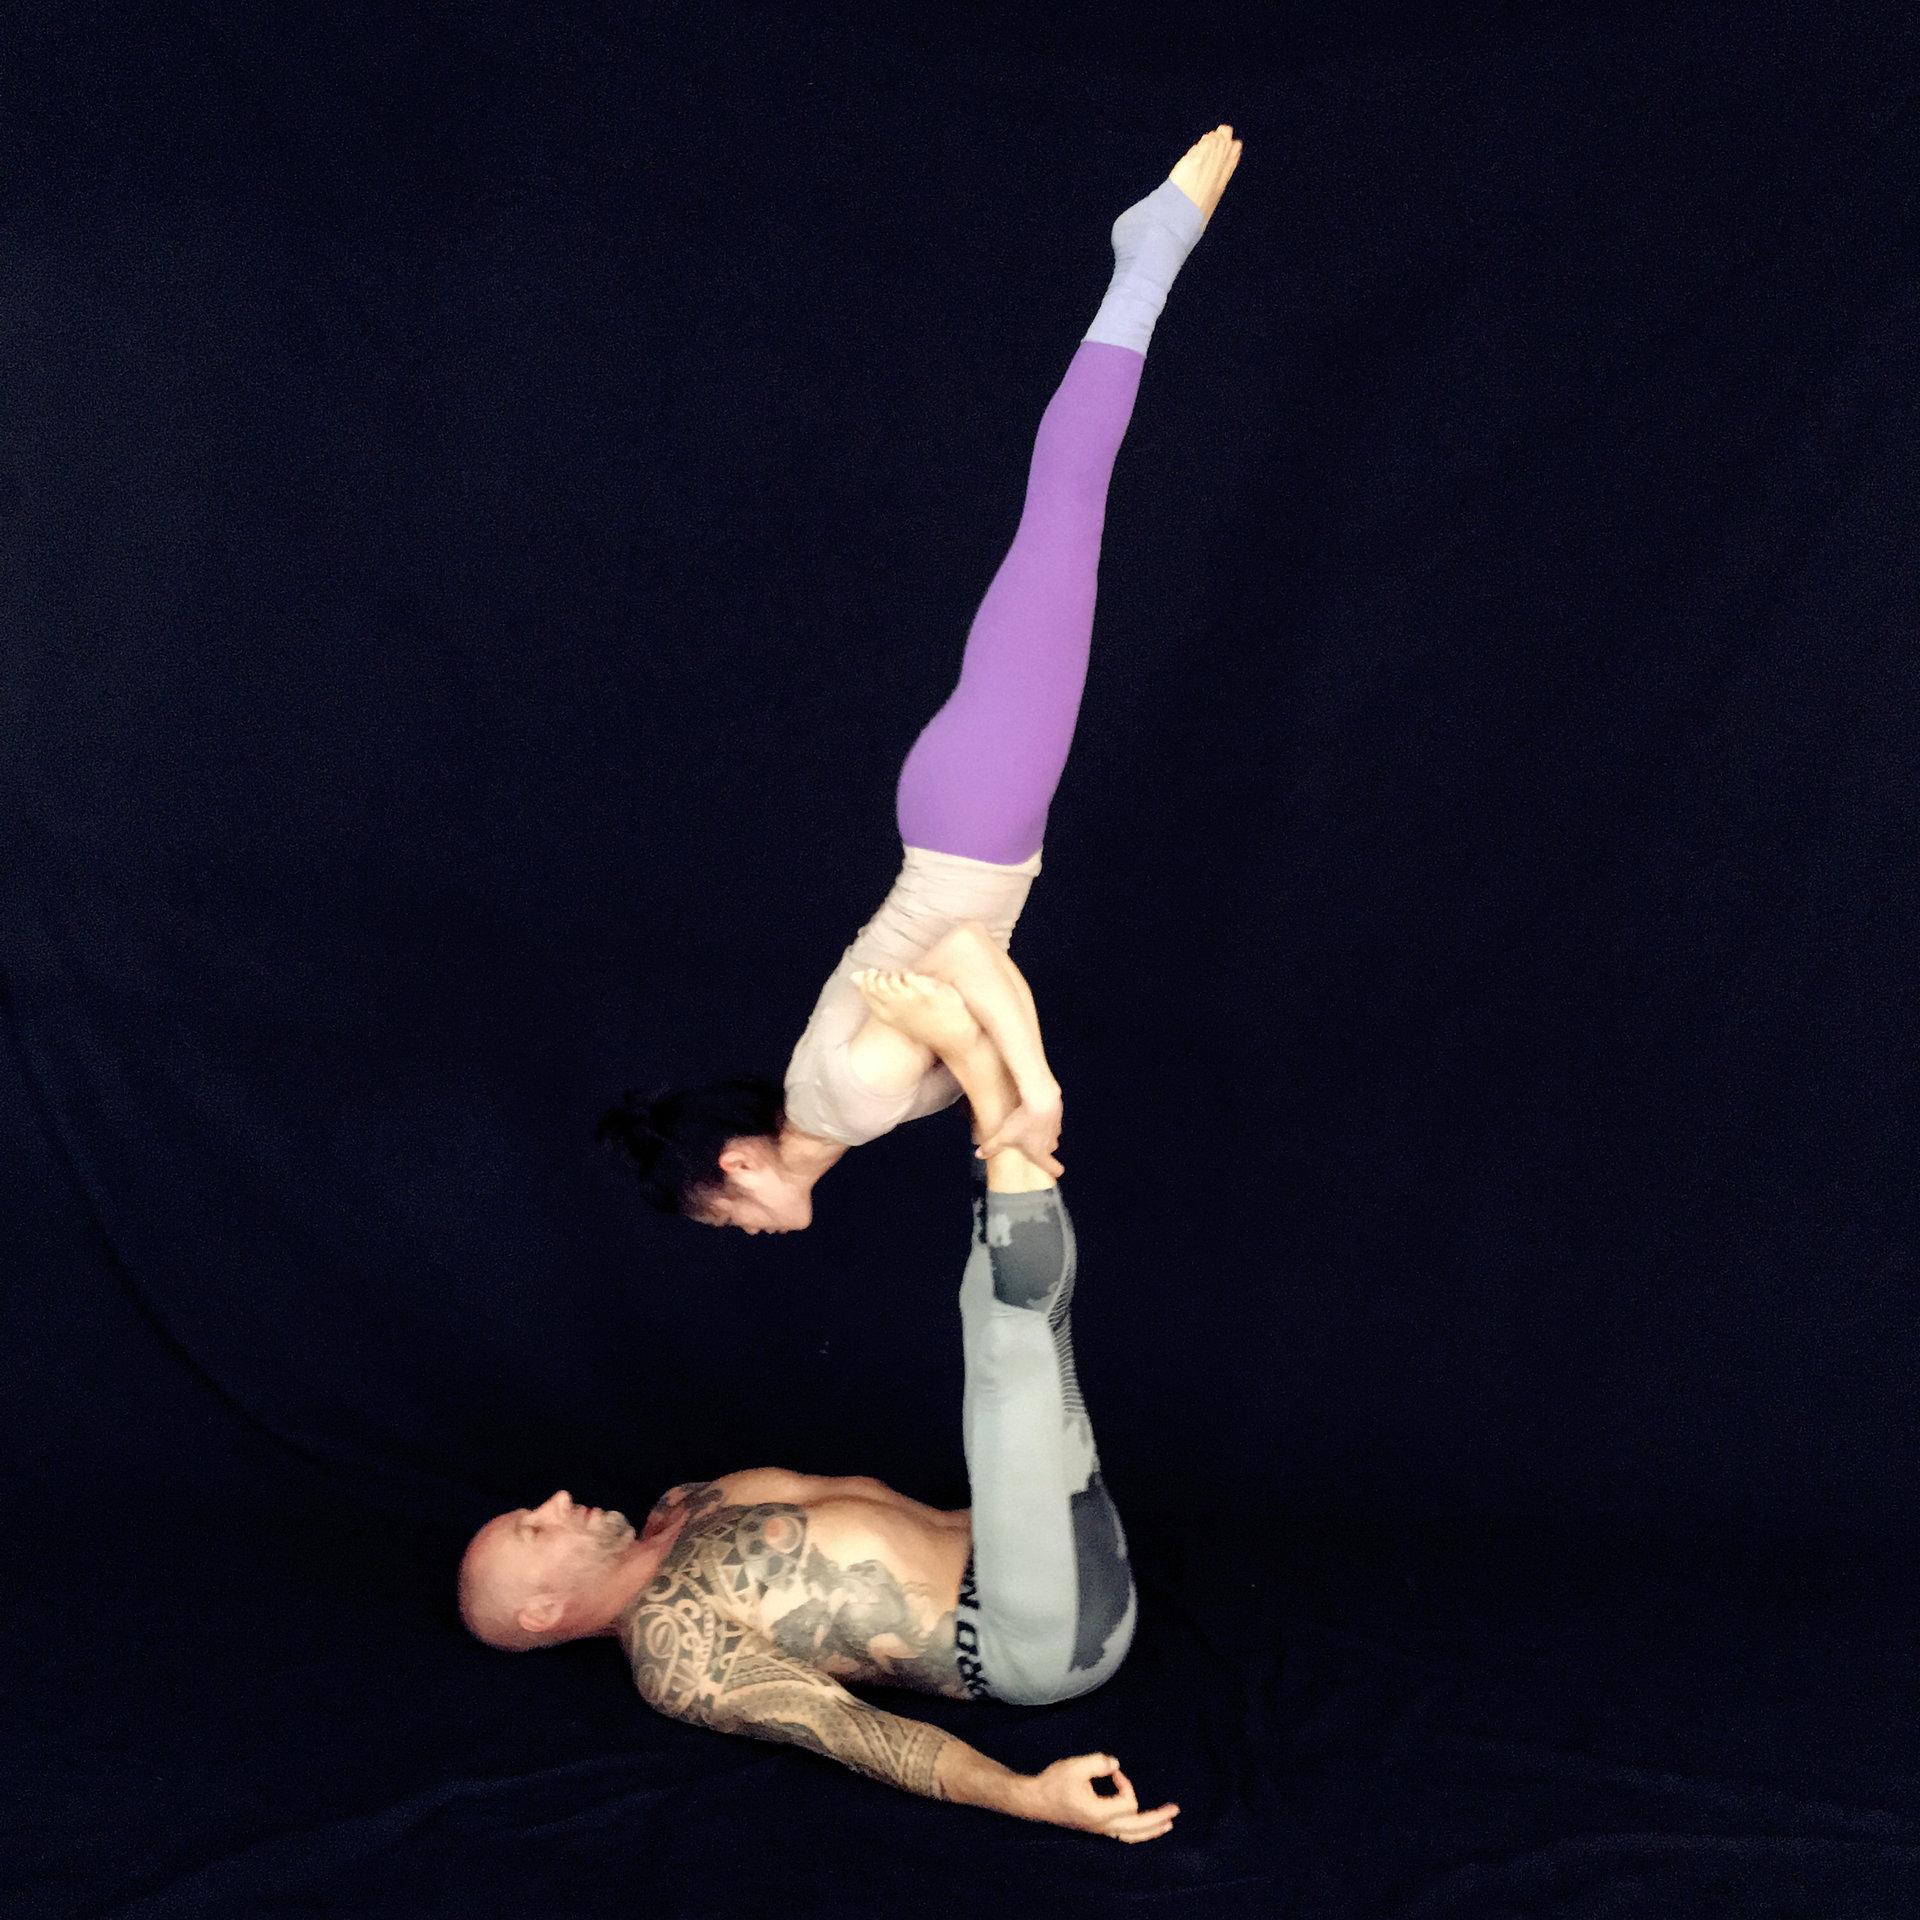 acro yoga